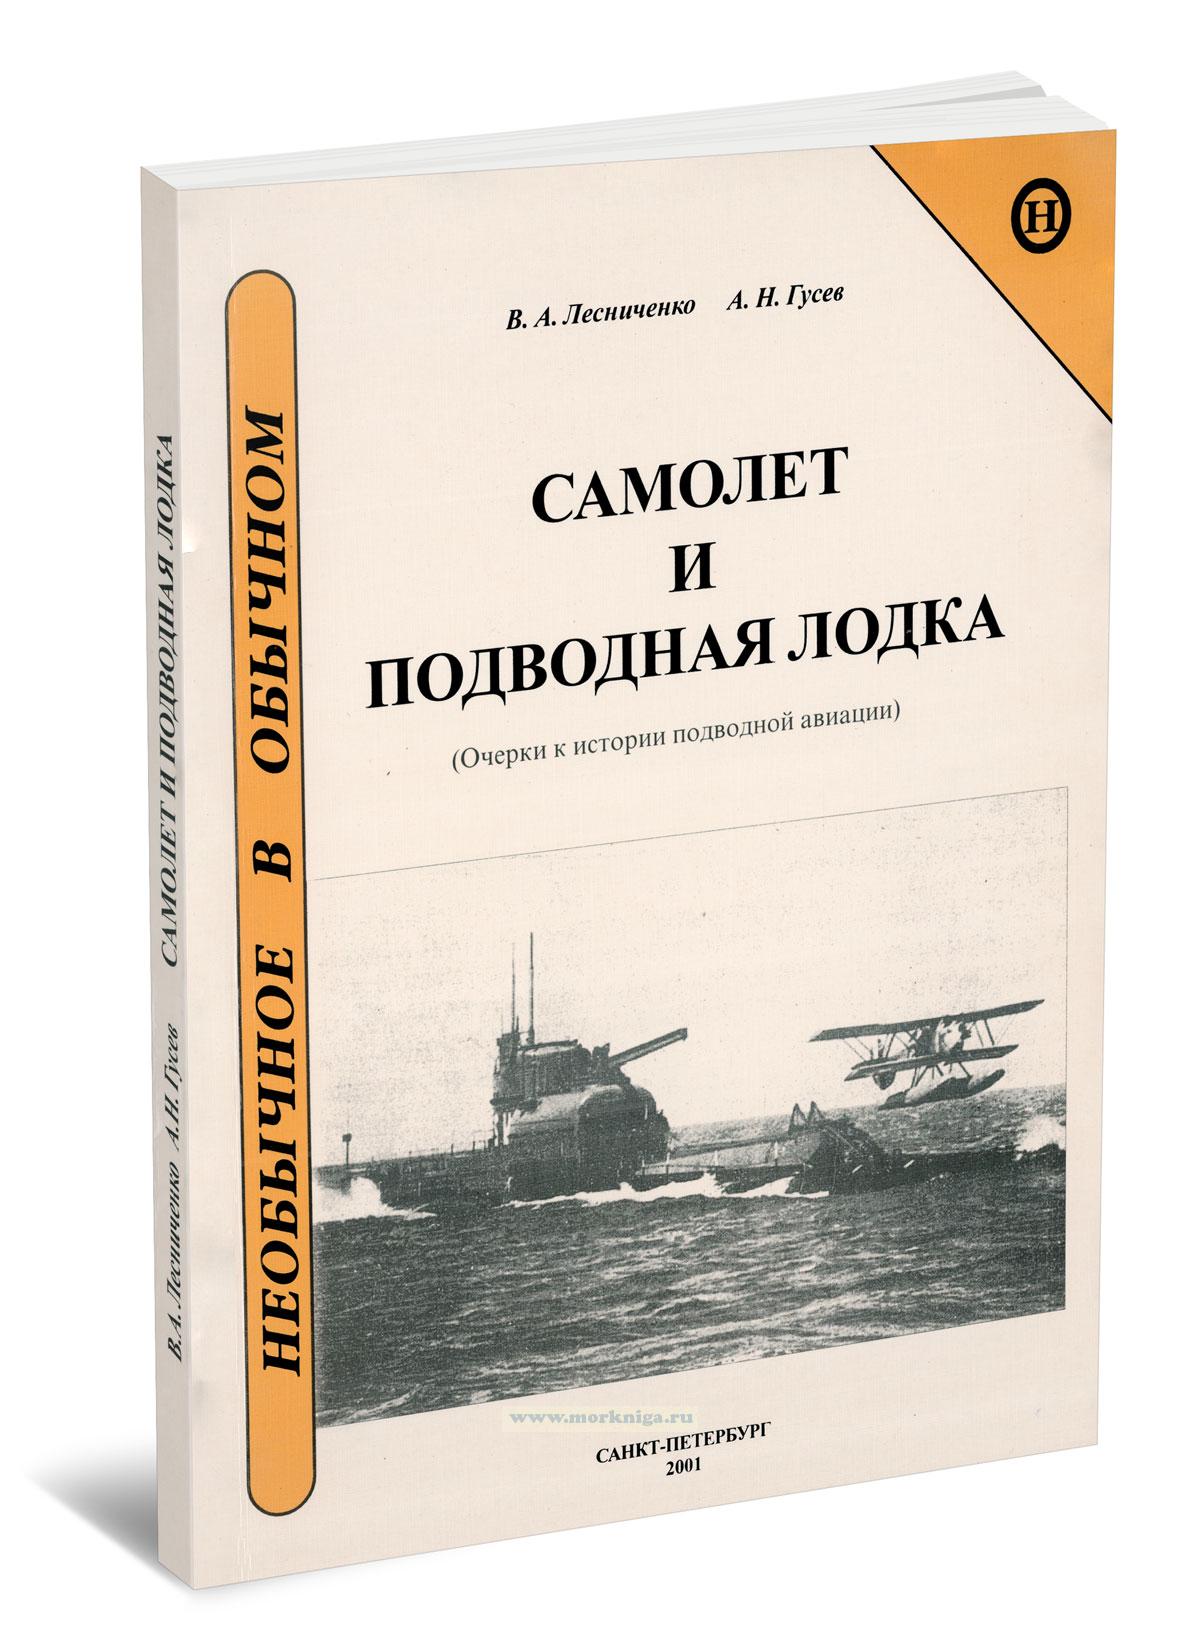 Самолет и подводная лодка (Очерки к истории подводной авиации)